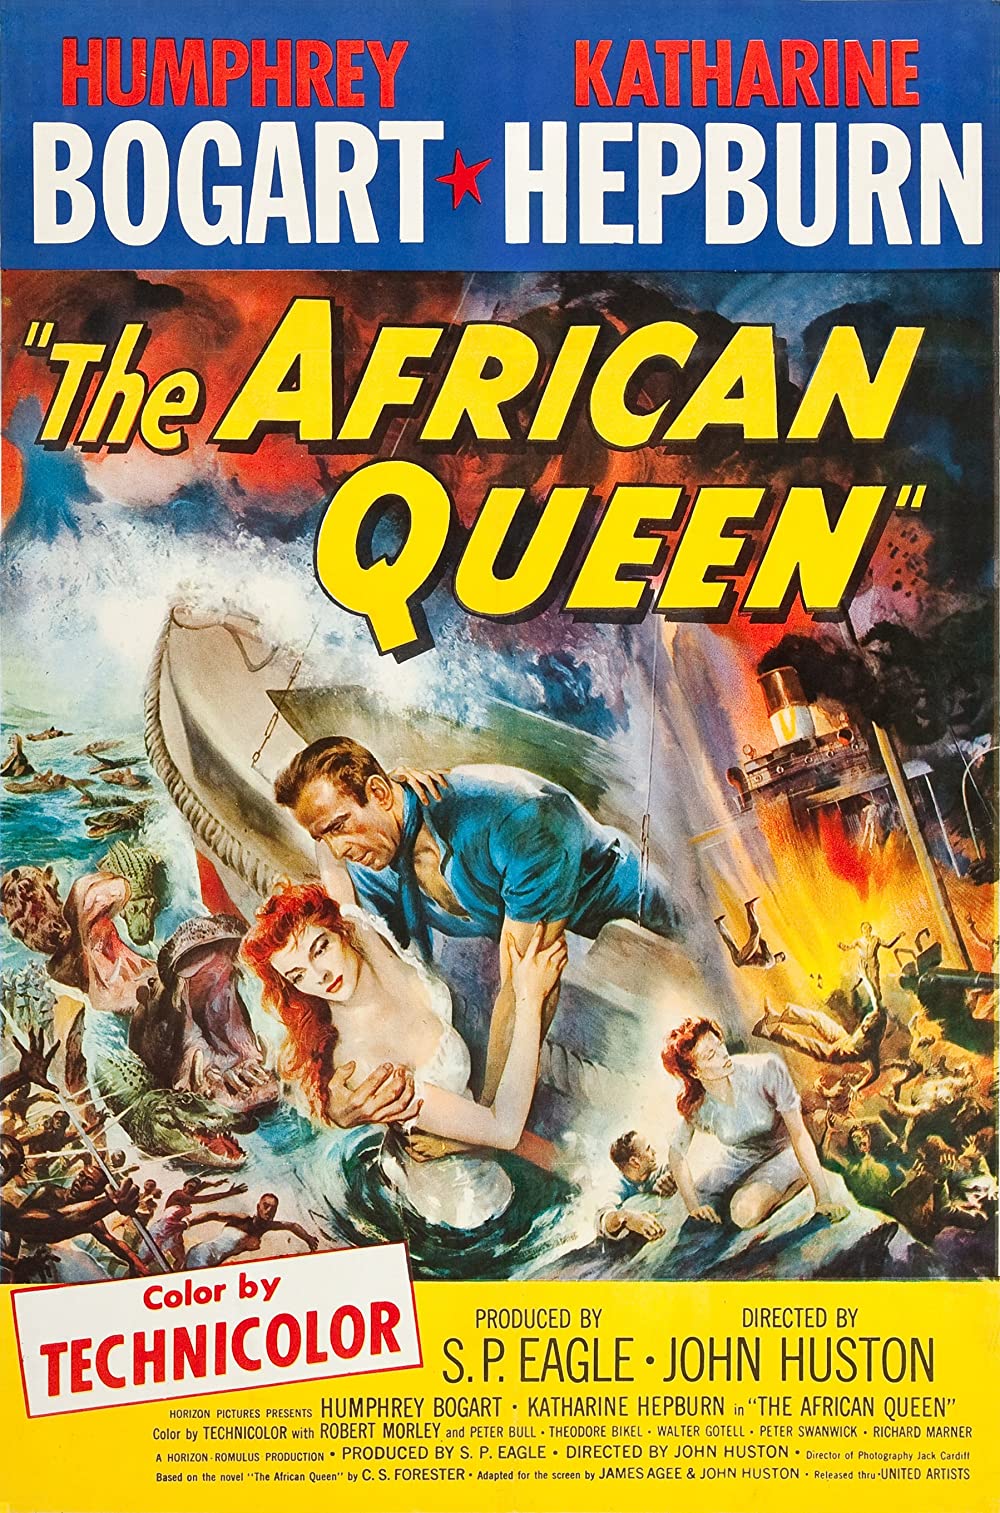 Filmbeschreibung zu The African Queen